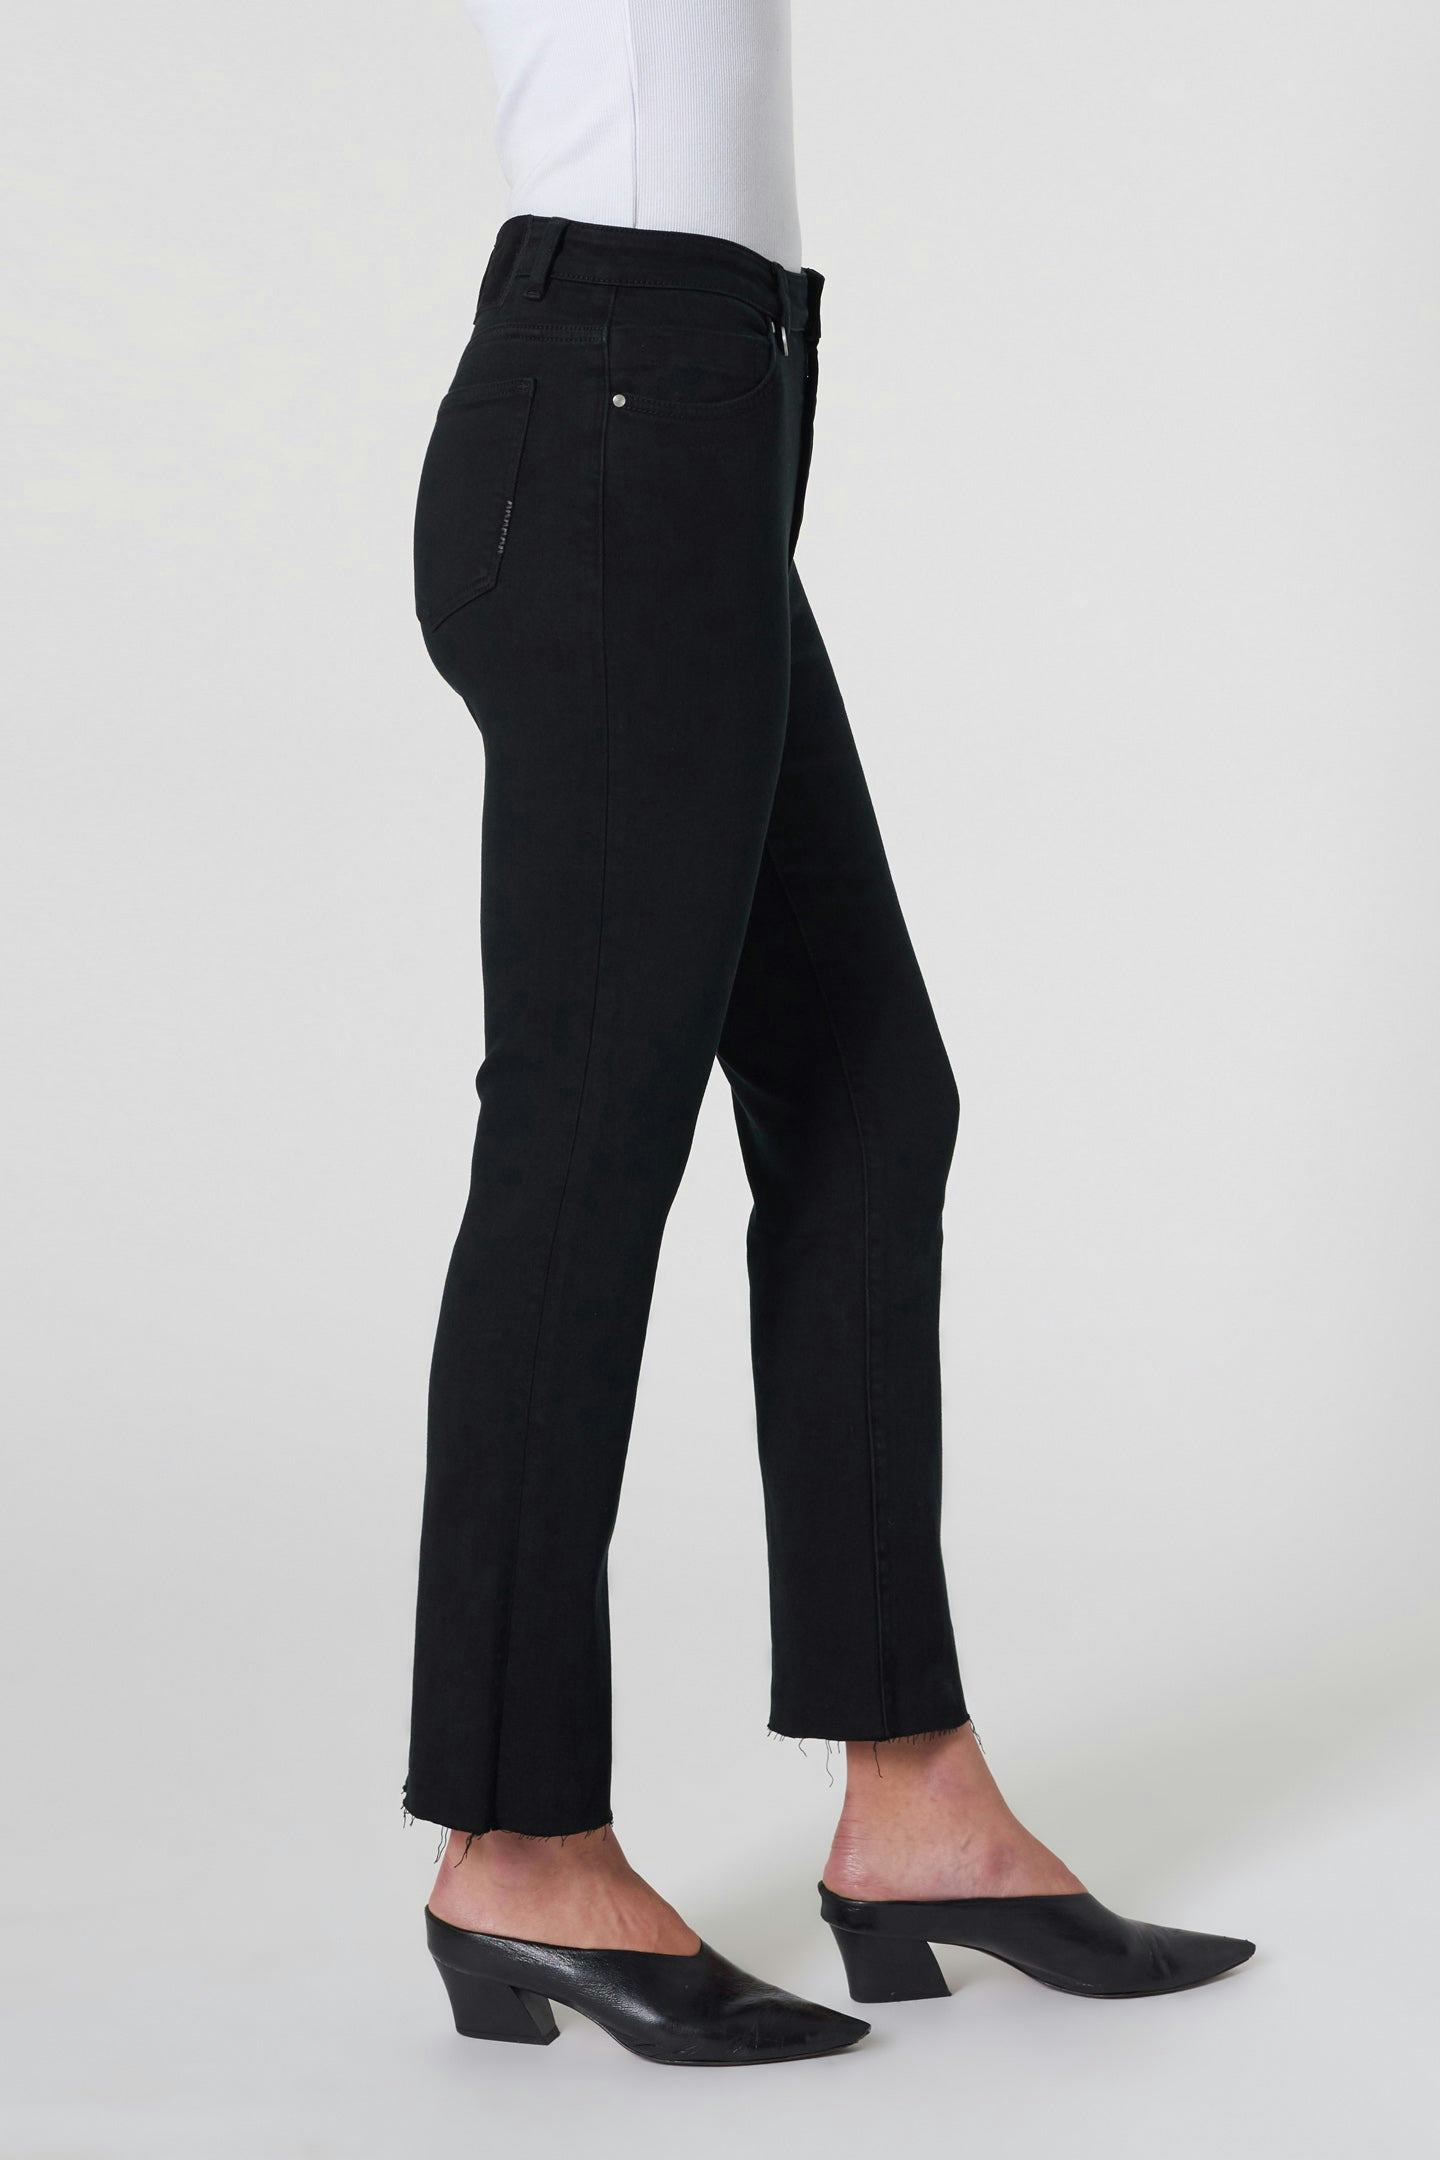 Twiggy Crop Premium Stretch - Noir Neuw dark black womens-jeans 